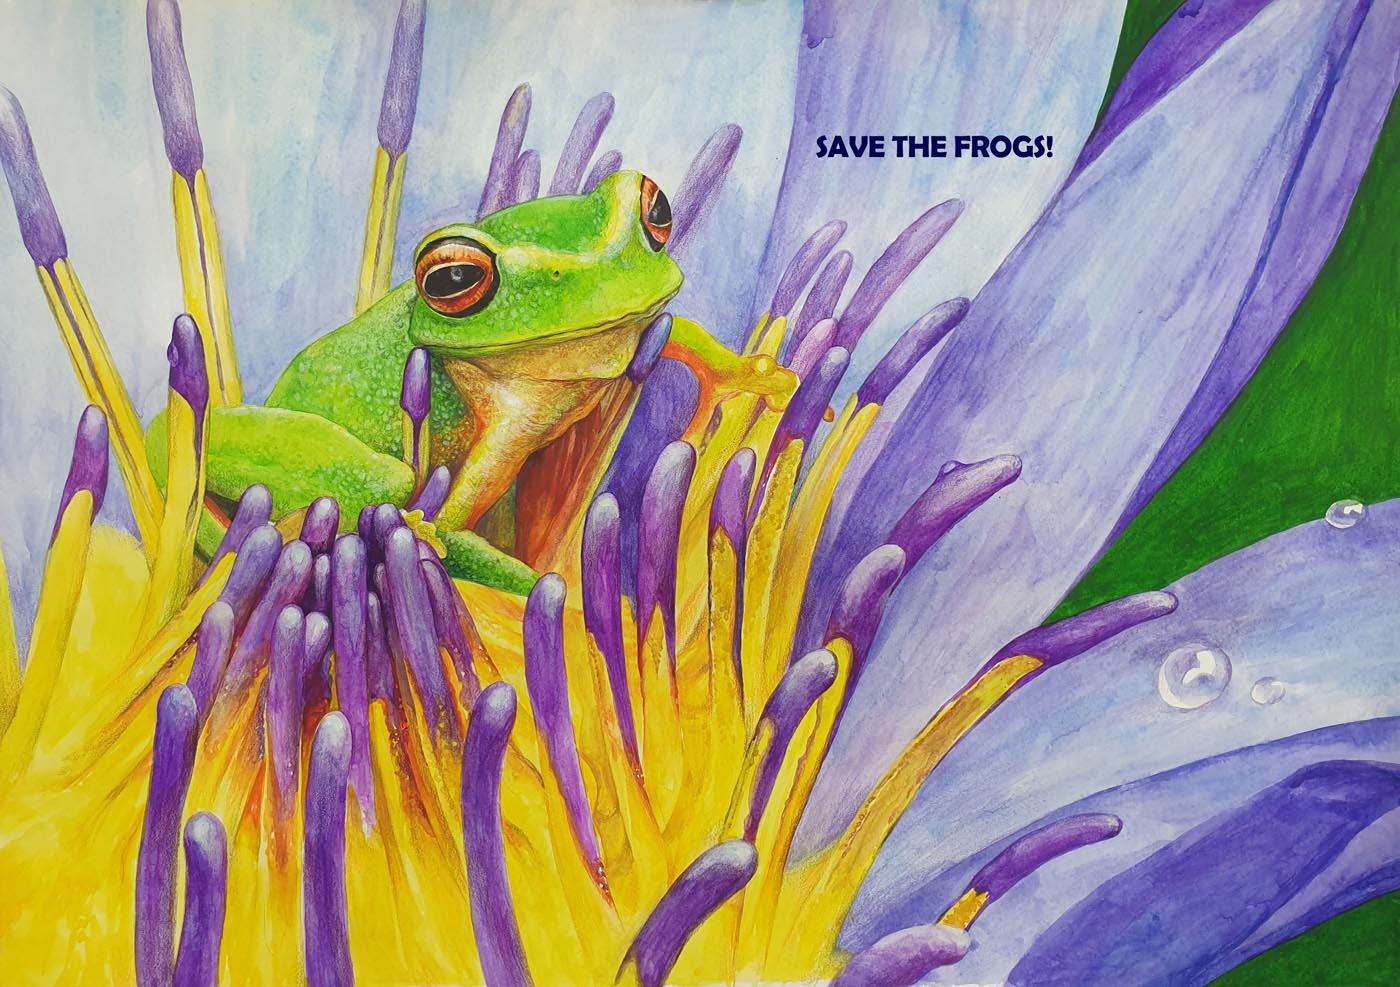 Hyunseo-Lee-Coreia do Sul-2021-save-the-frogs-art-contest Vencedor do 2º lugar